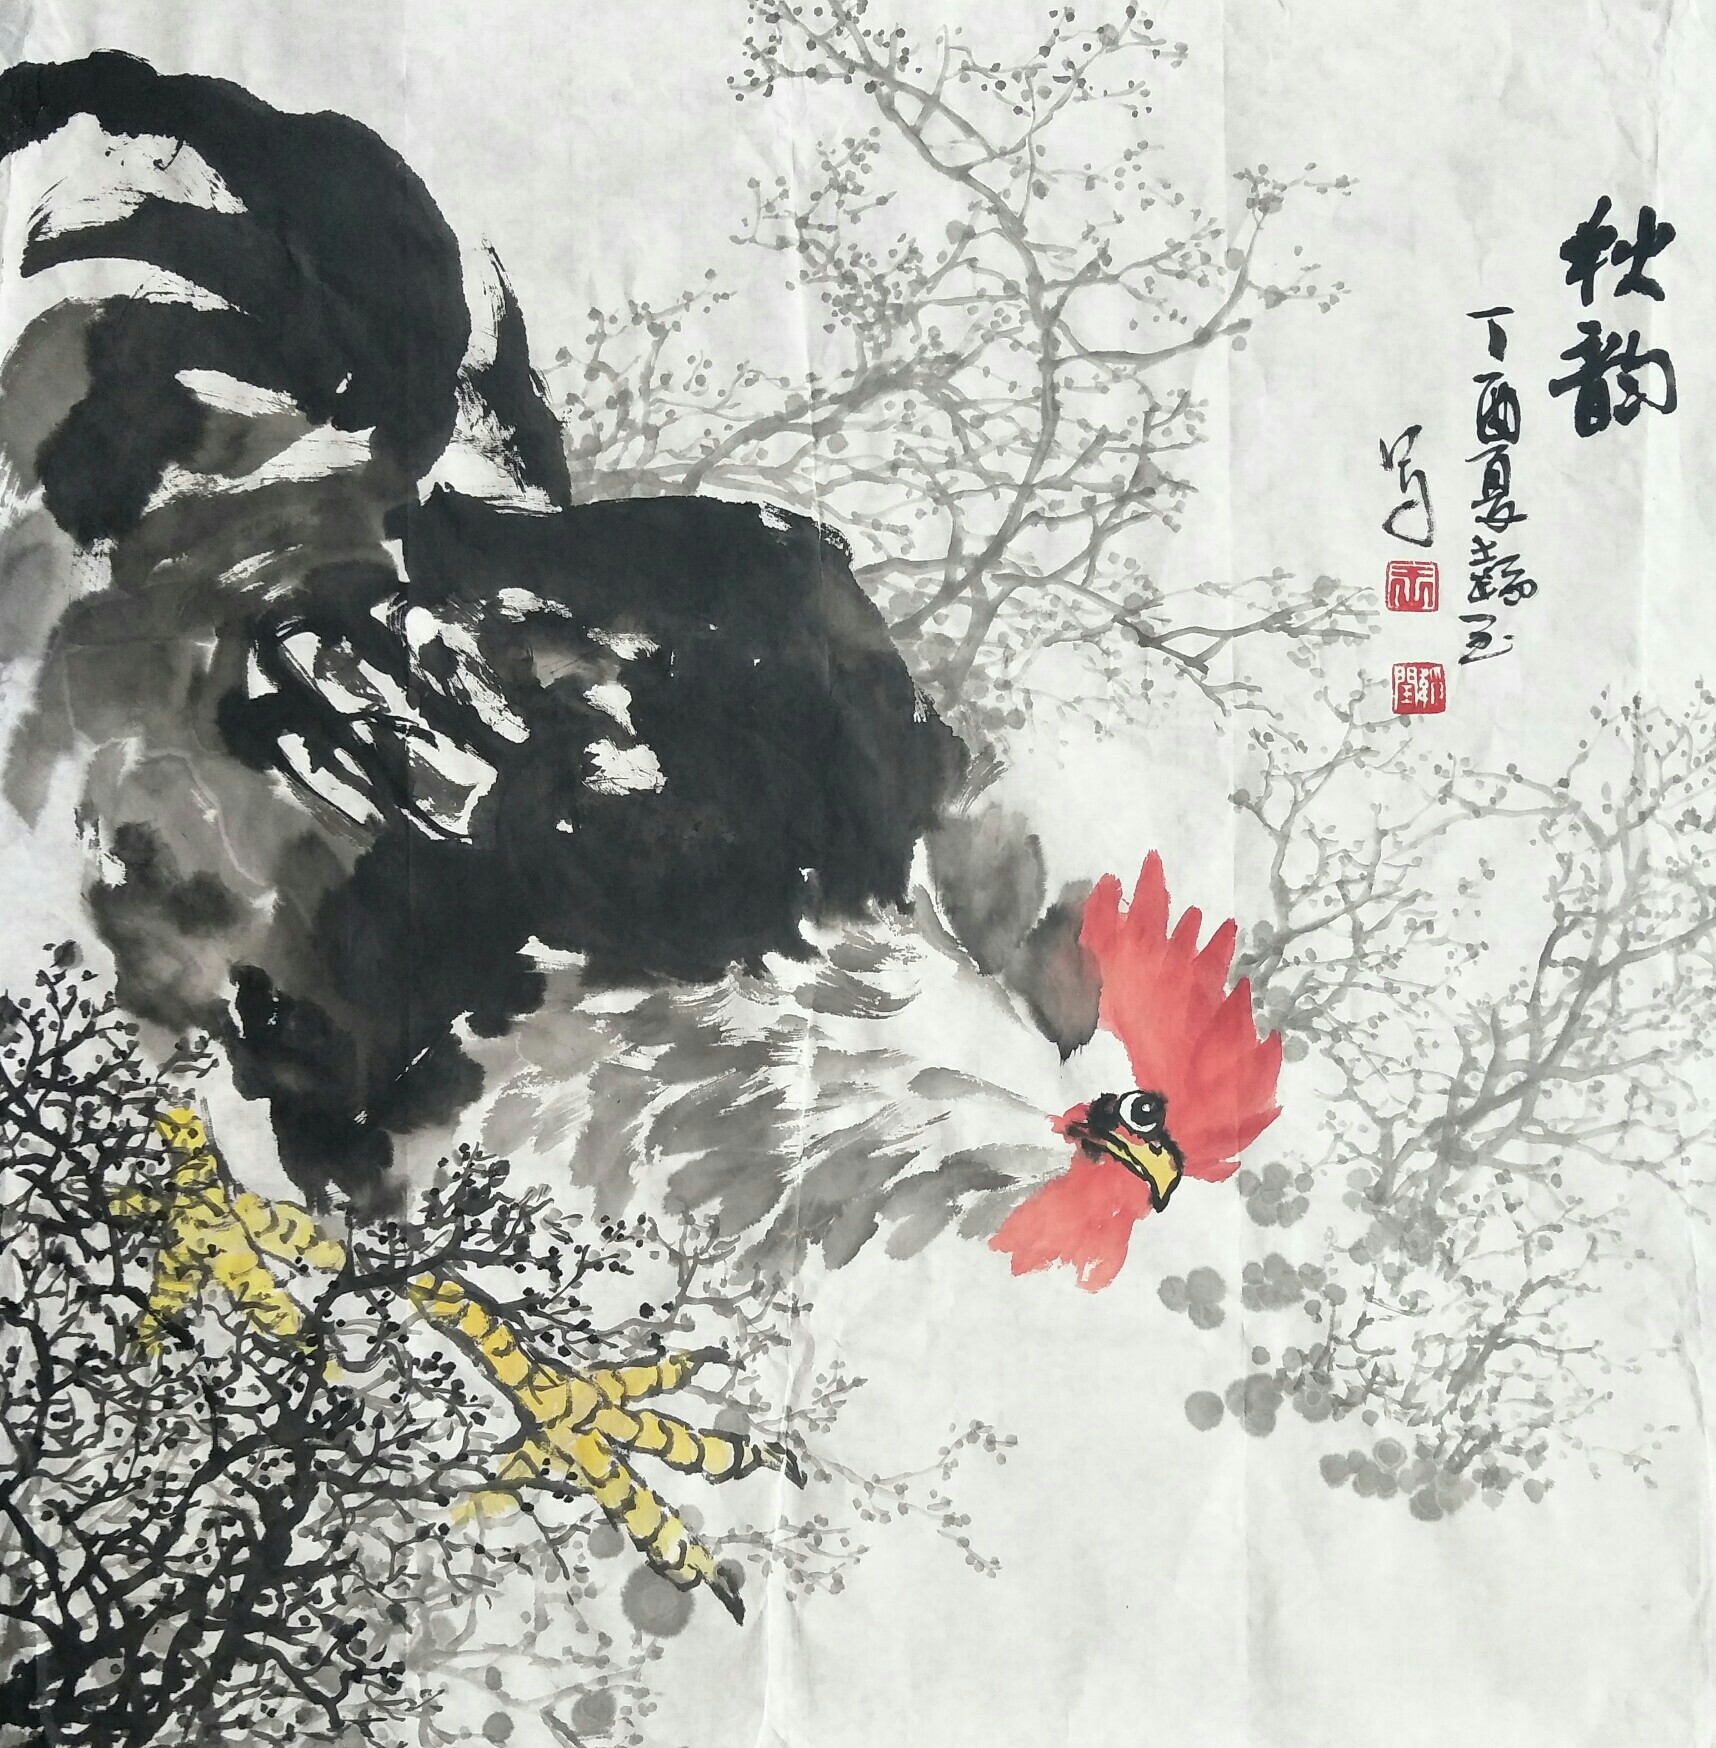 辽宁画鸡的画家图片